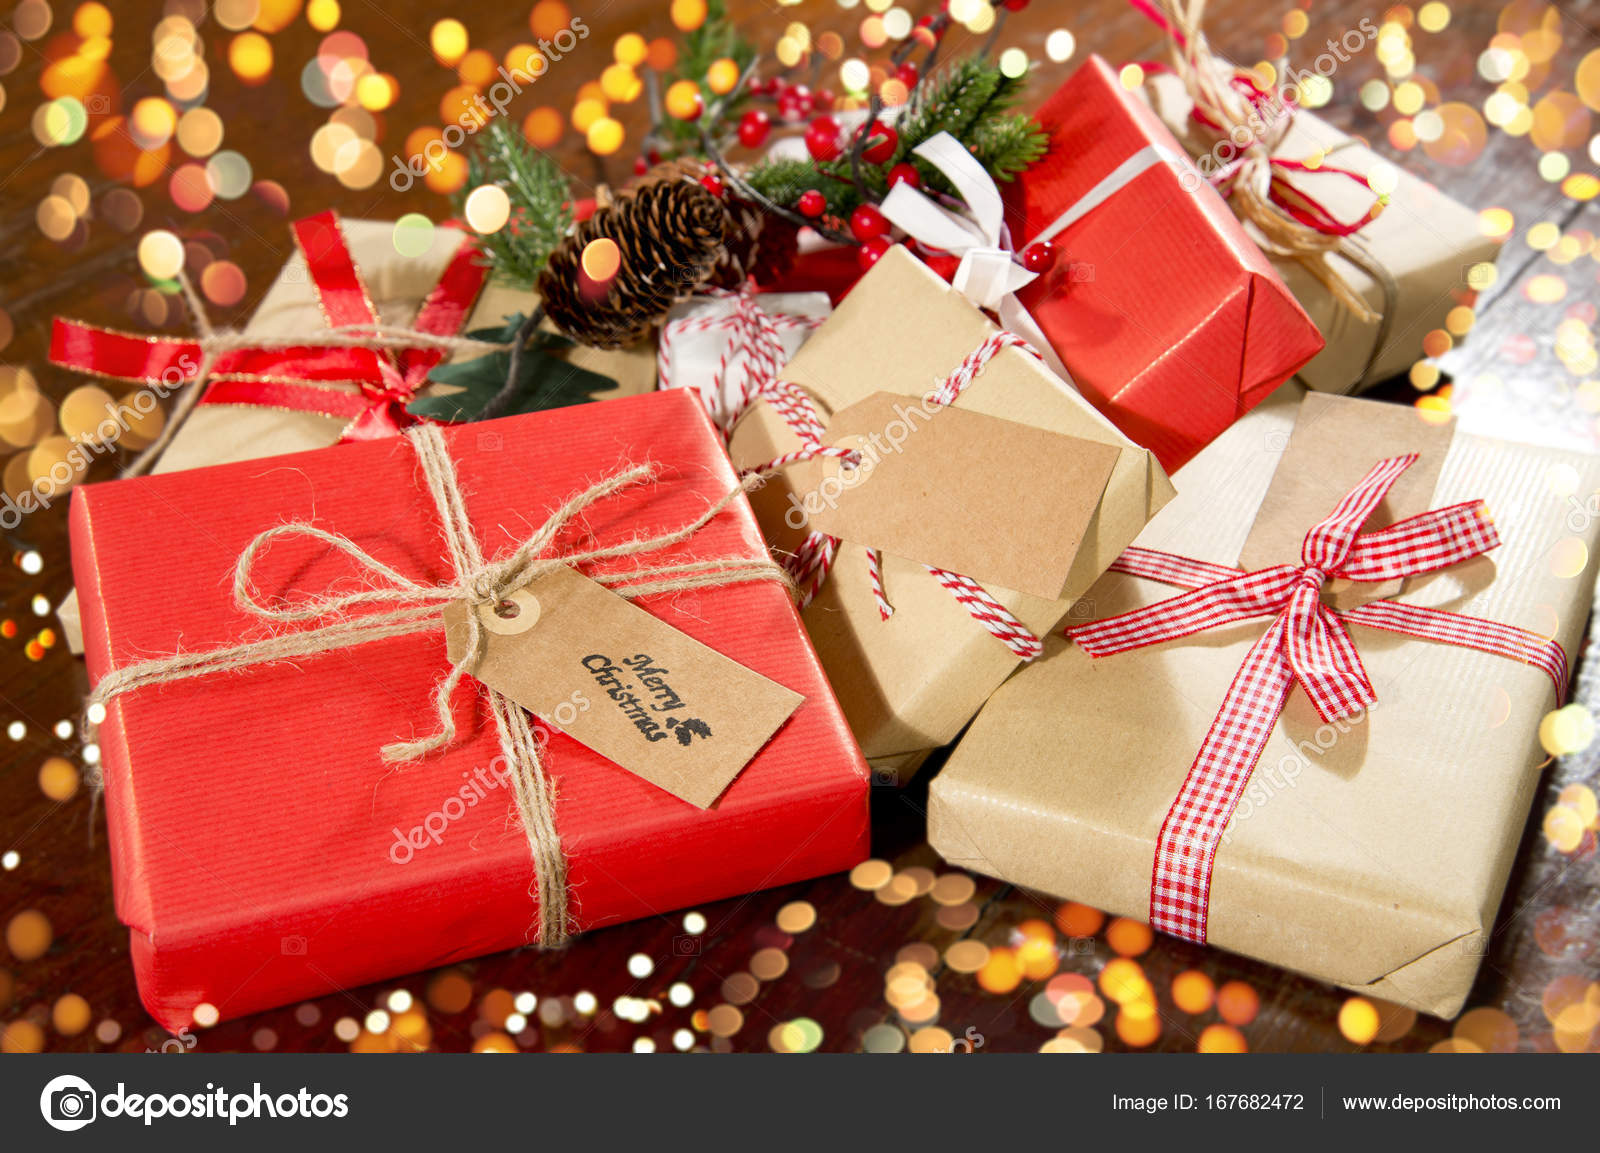 speler Iets tevredenheid Kerst decoratie en cadeau dozen op houten achtergrond ⬇ Stockfoto,  rechtenvrije foto door © katy89 #167682472